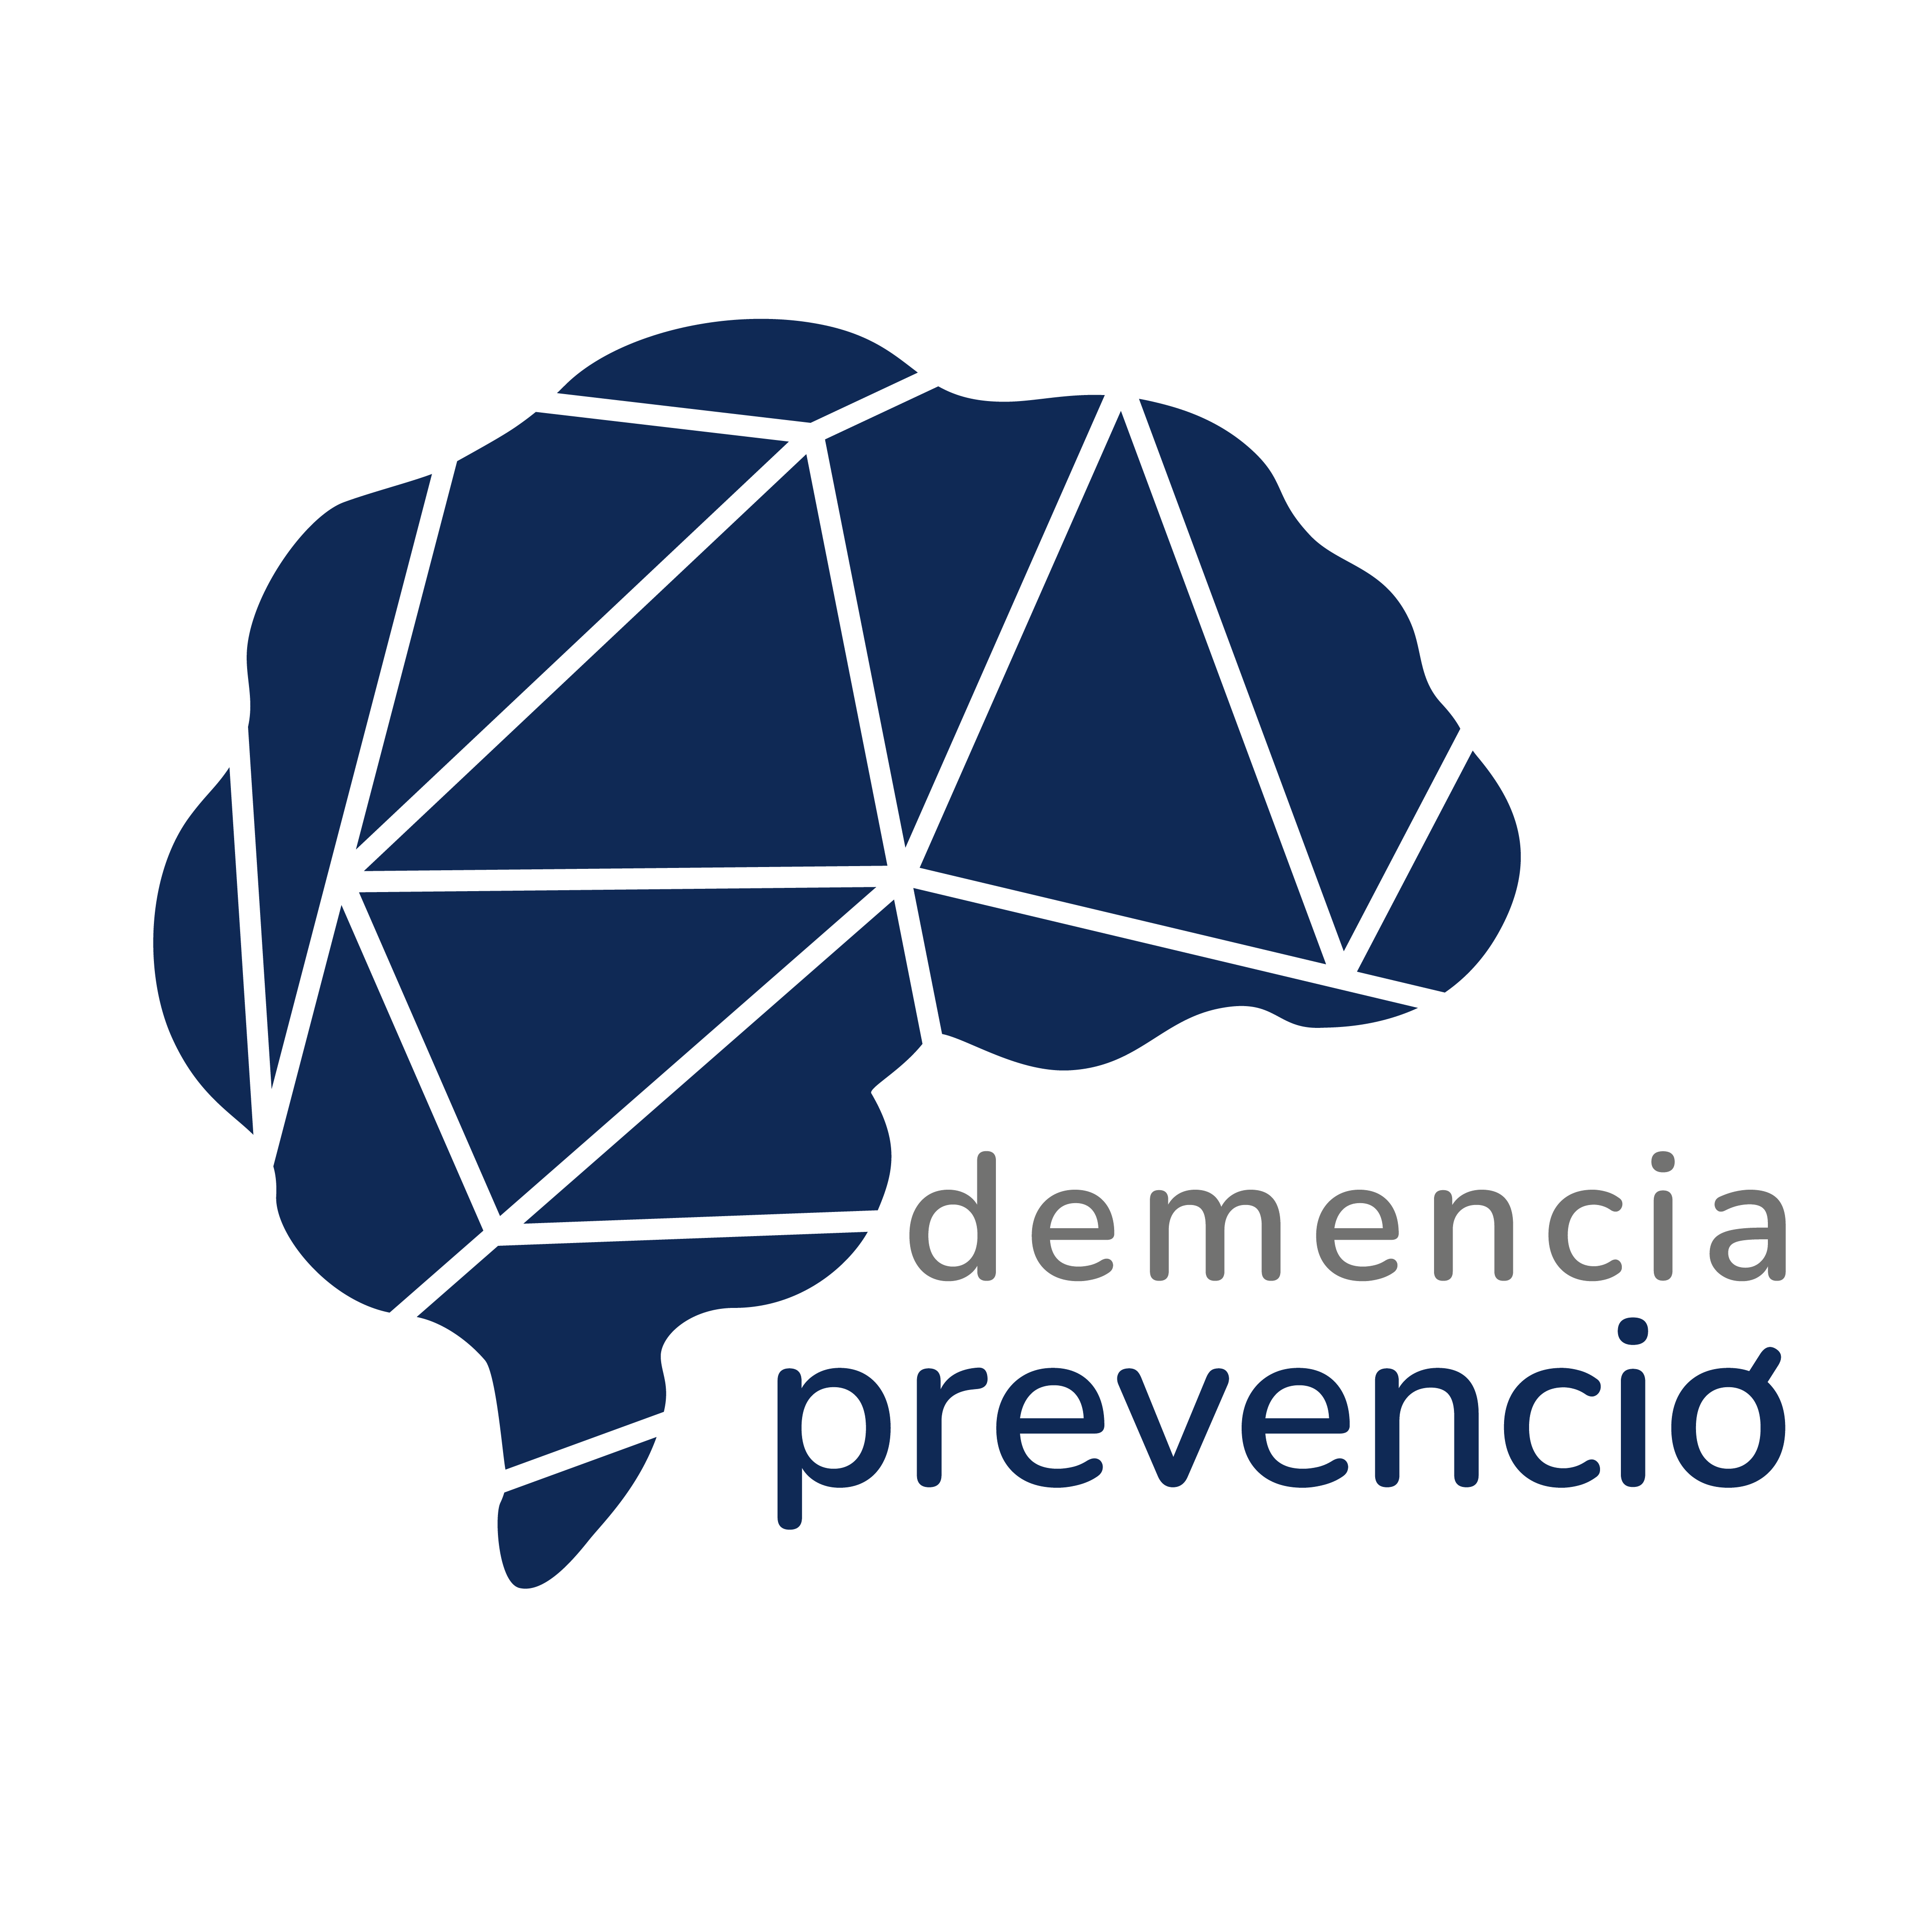 Demencia prevenció kutatás